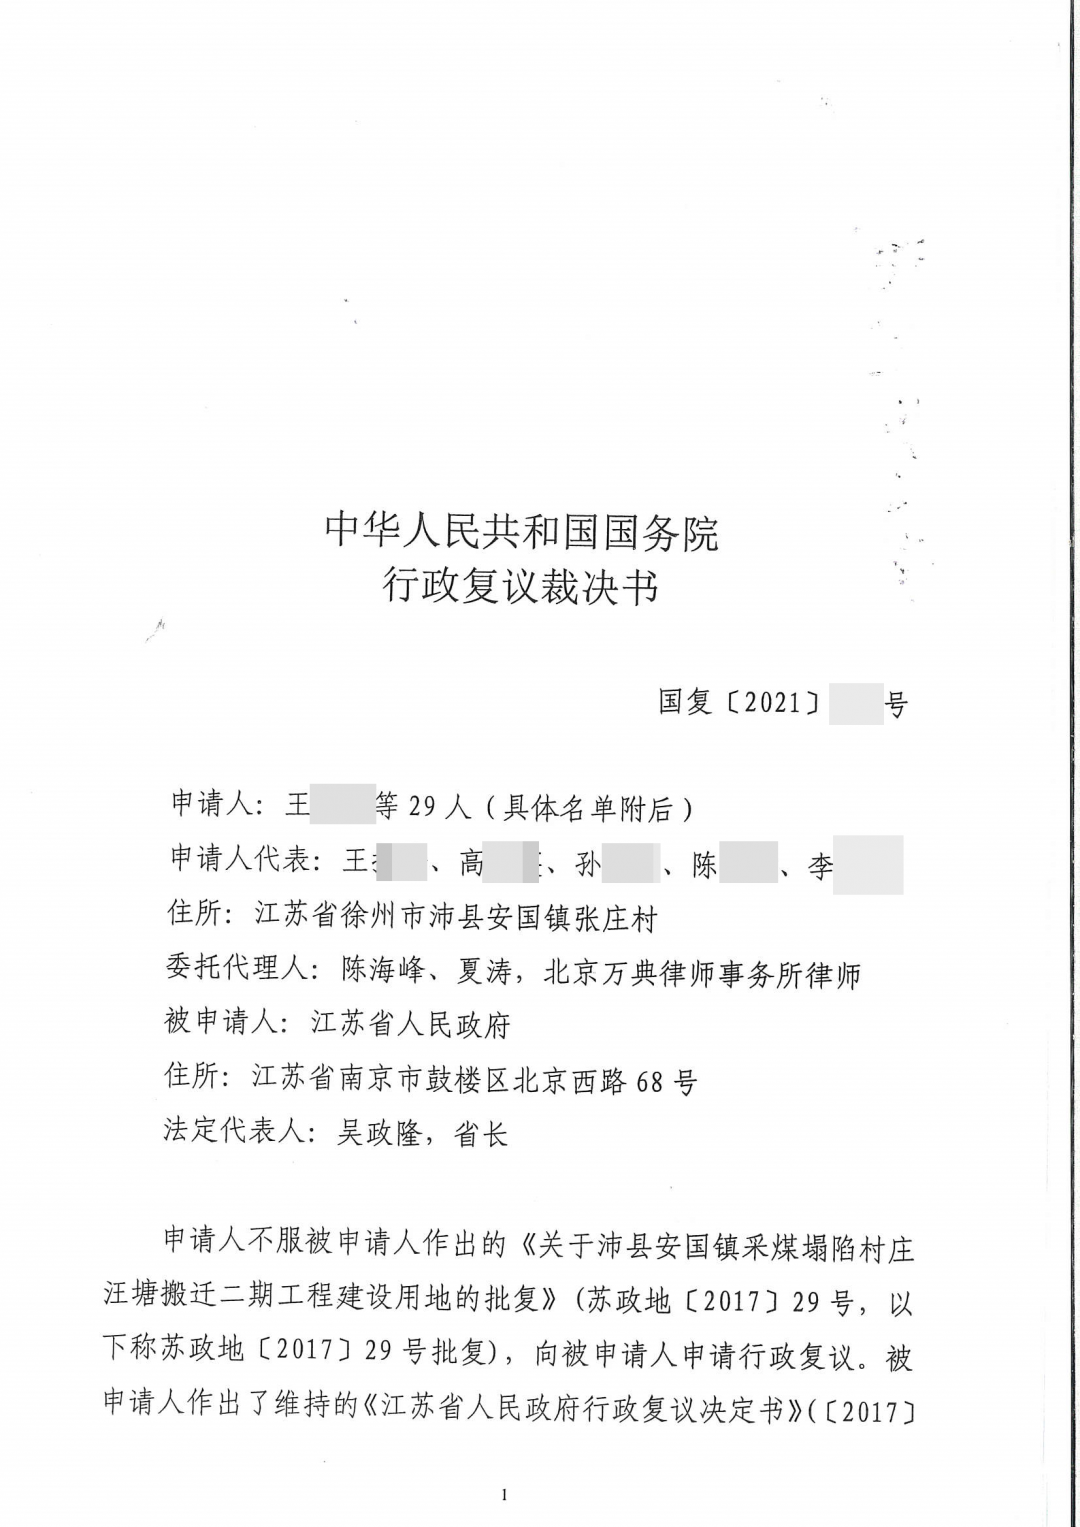 【江苏】省政府征地批复被国务院裁决确认违法！